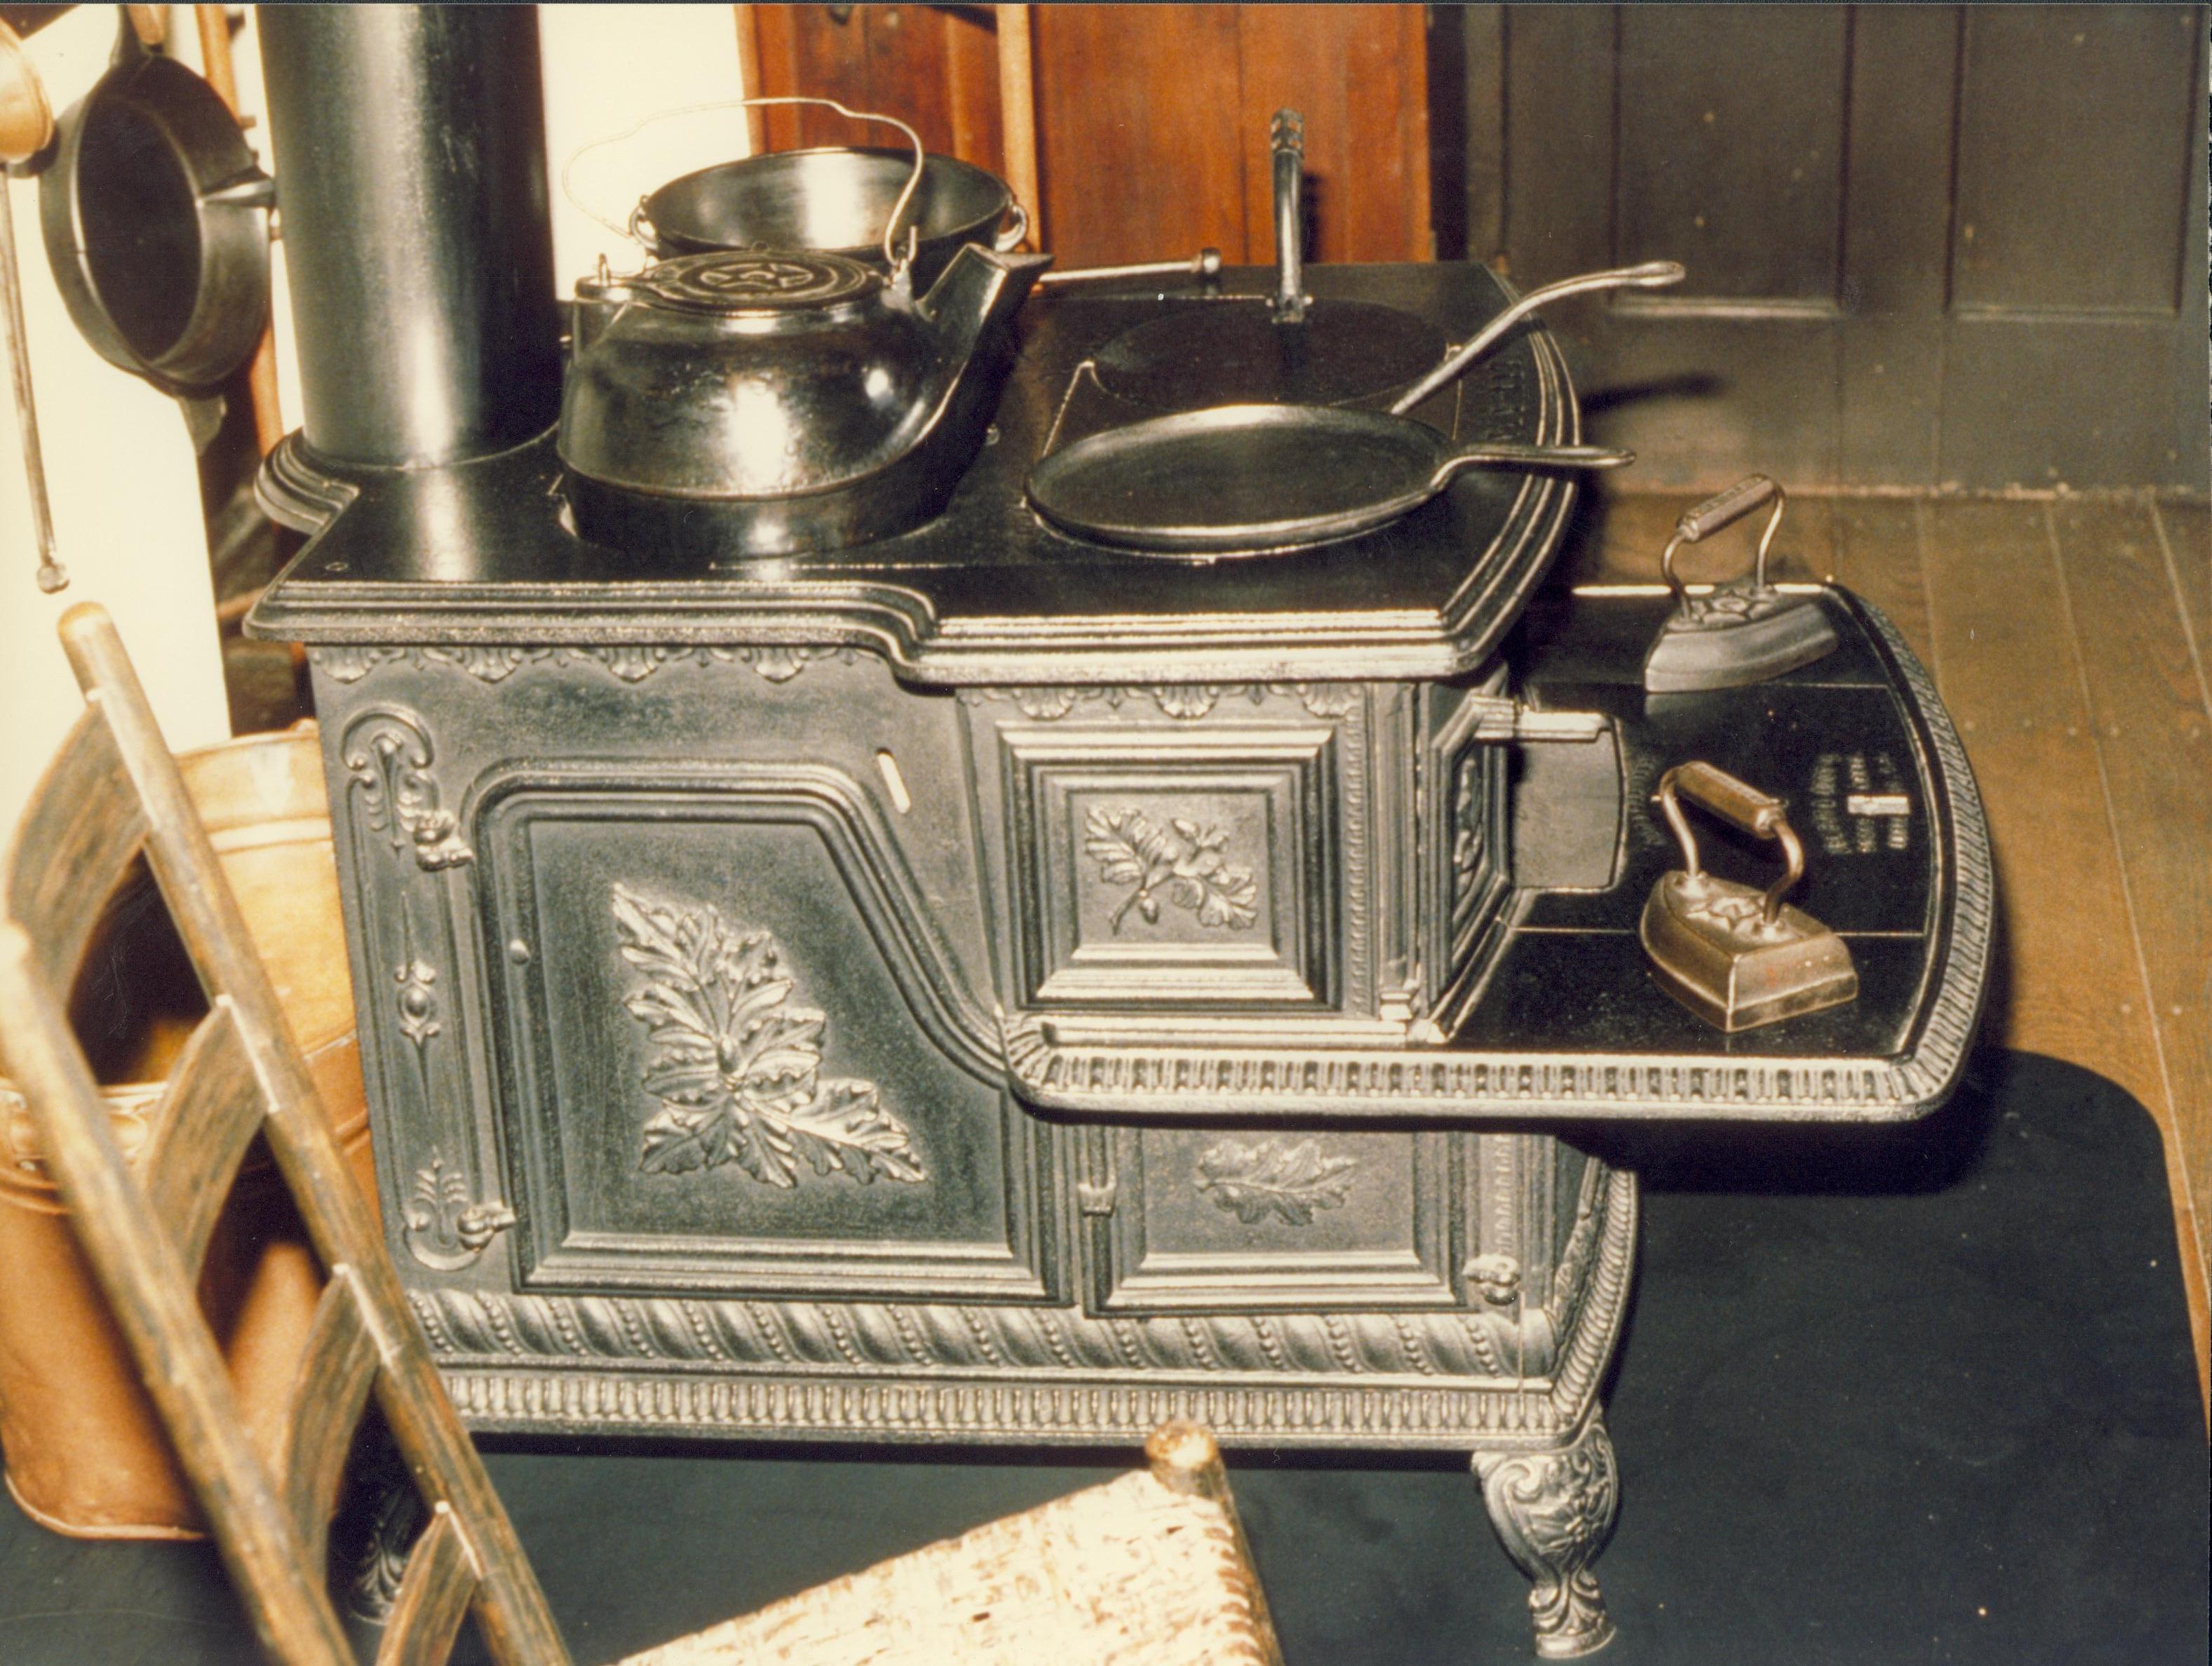 NA Lincoln, Home, Kitchen, artifacts, stove, utensils